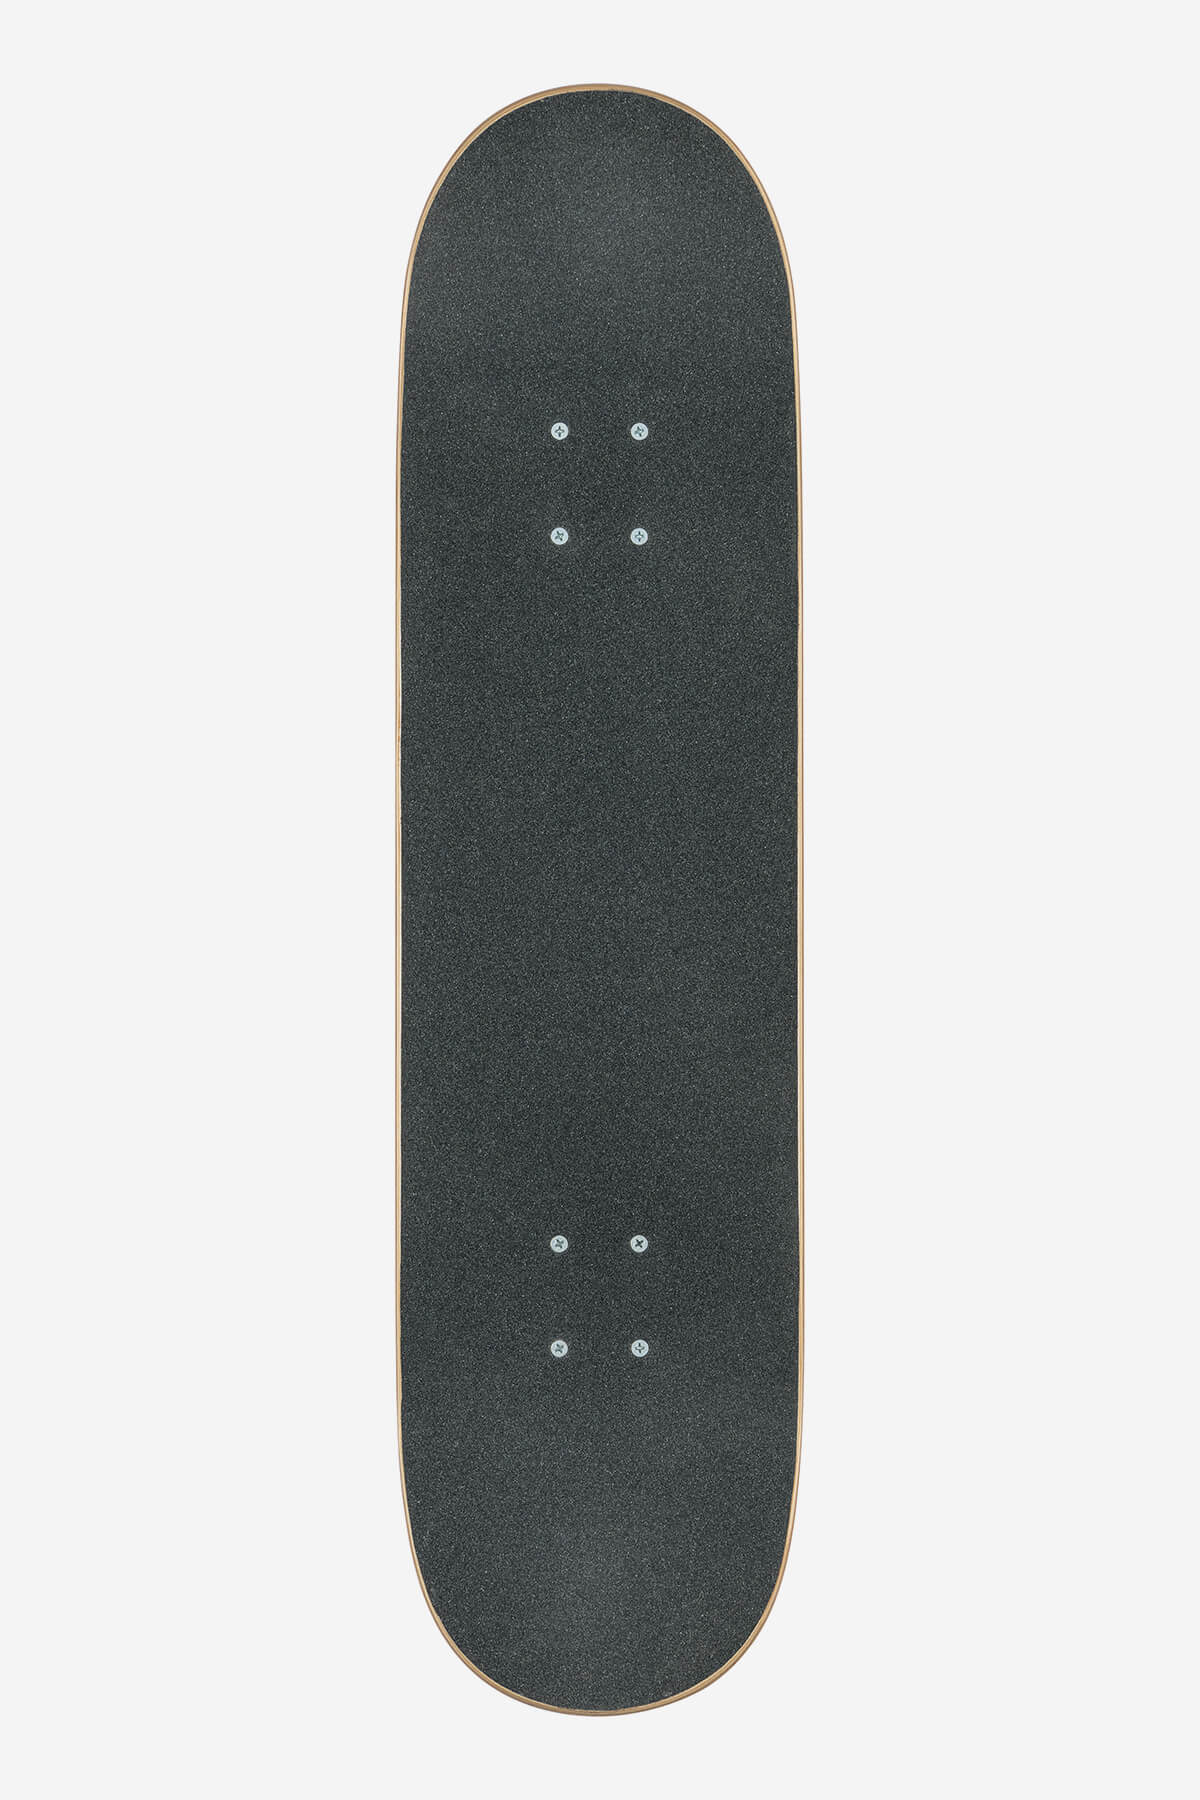 Globe - G0 Fubar - Red/White - 8.25" Komplett Skateboard